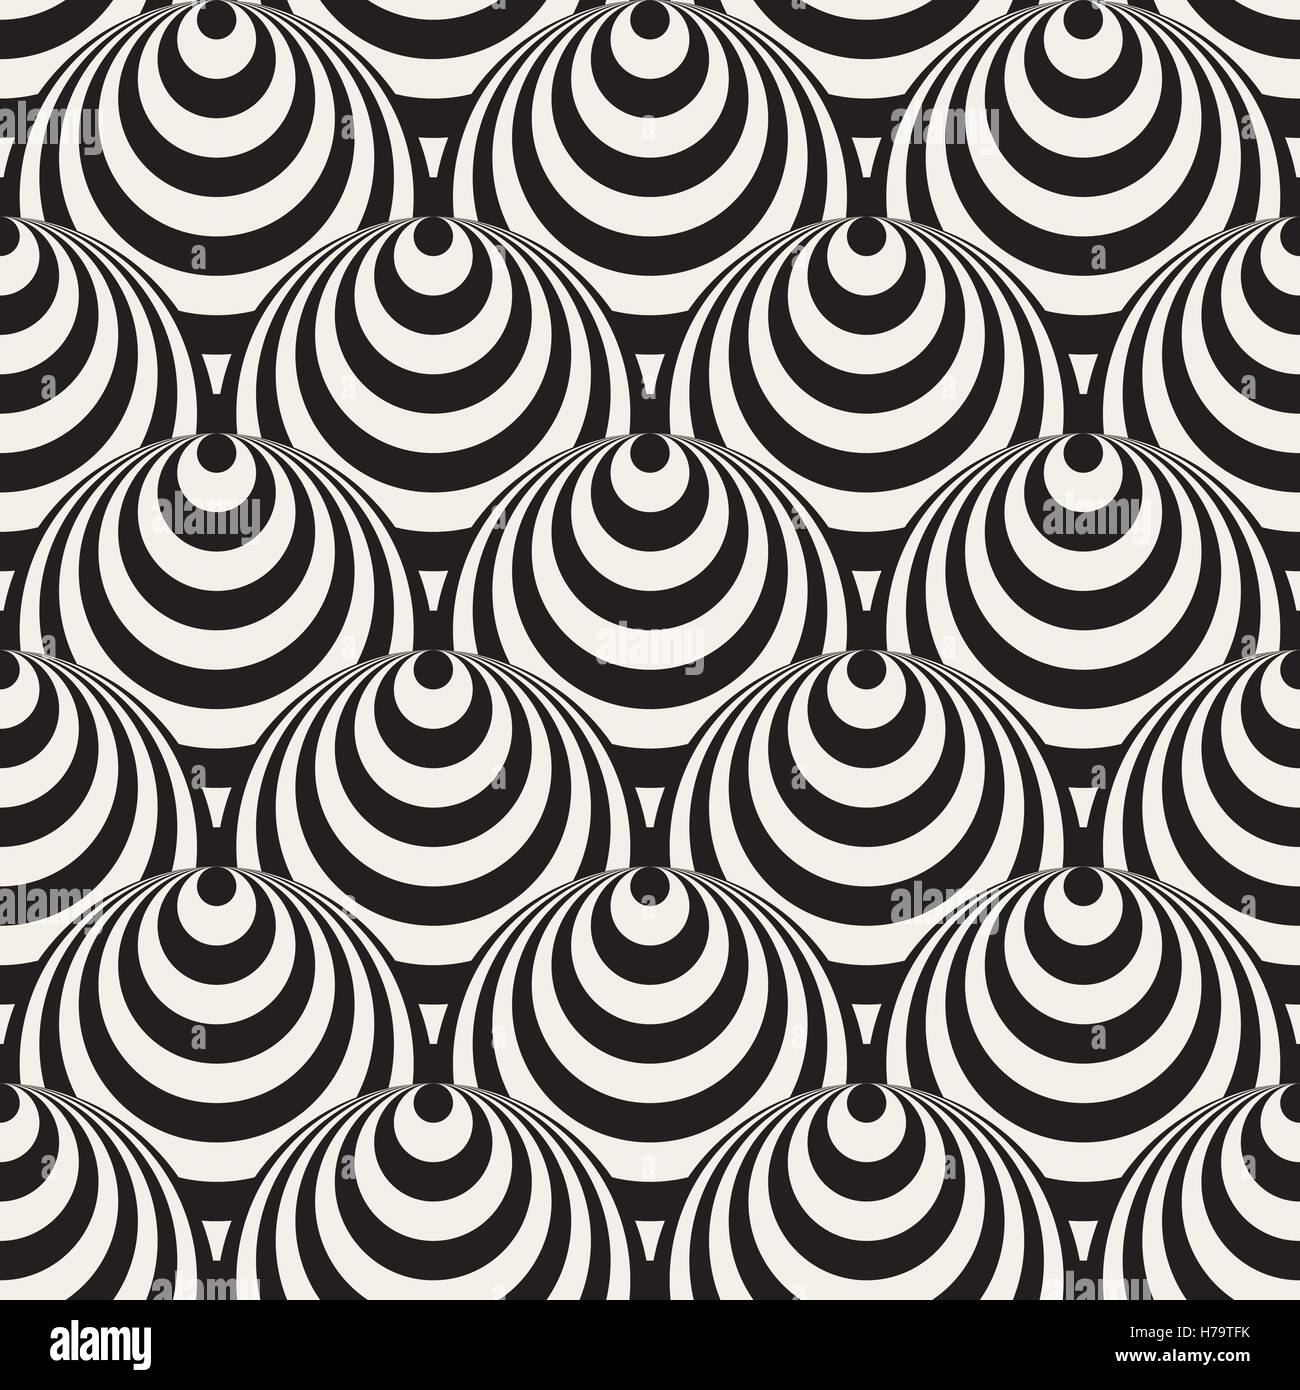 Vector Seamless in bianco e nero dei cerchi concentrici illusione ottica Pattern Illustrazione Vettoriale